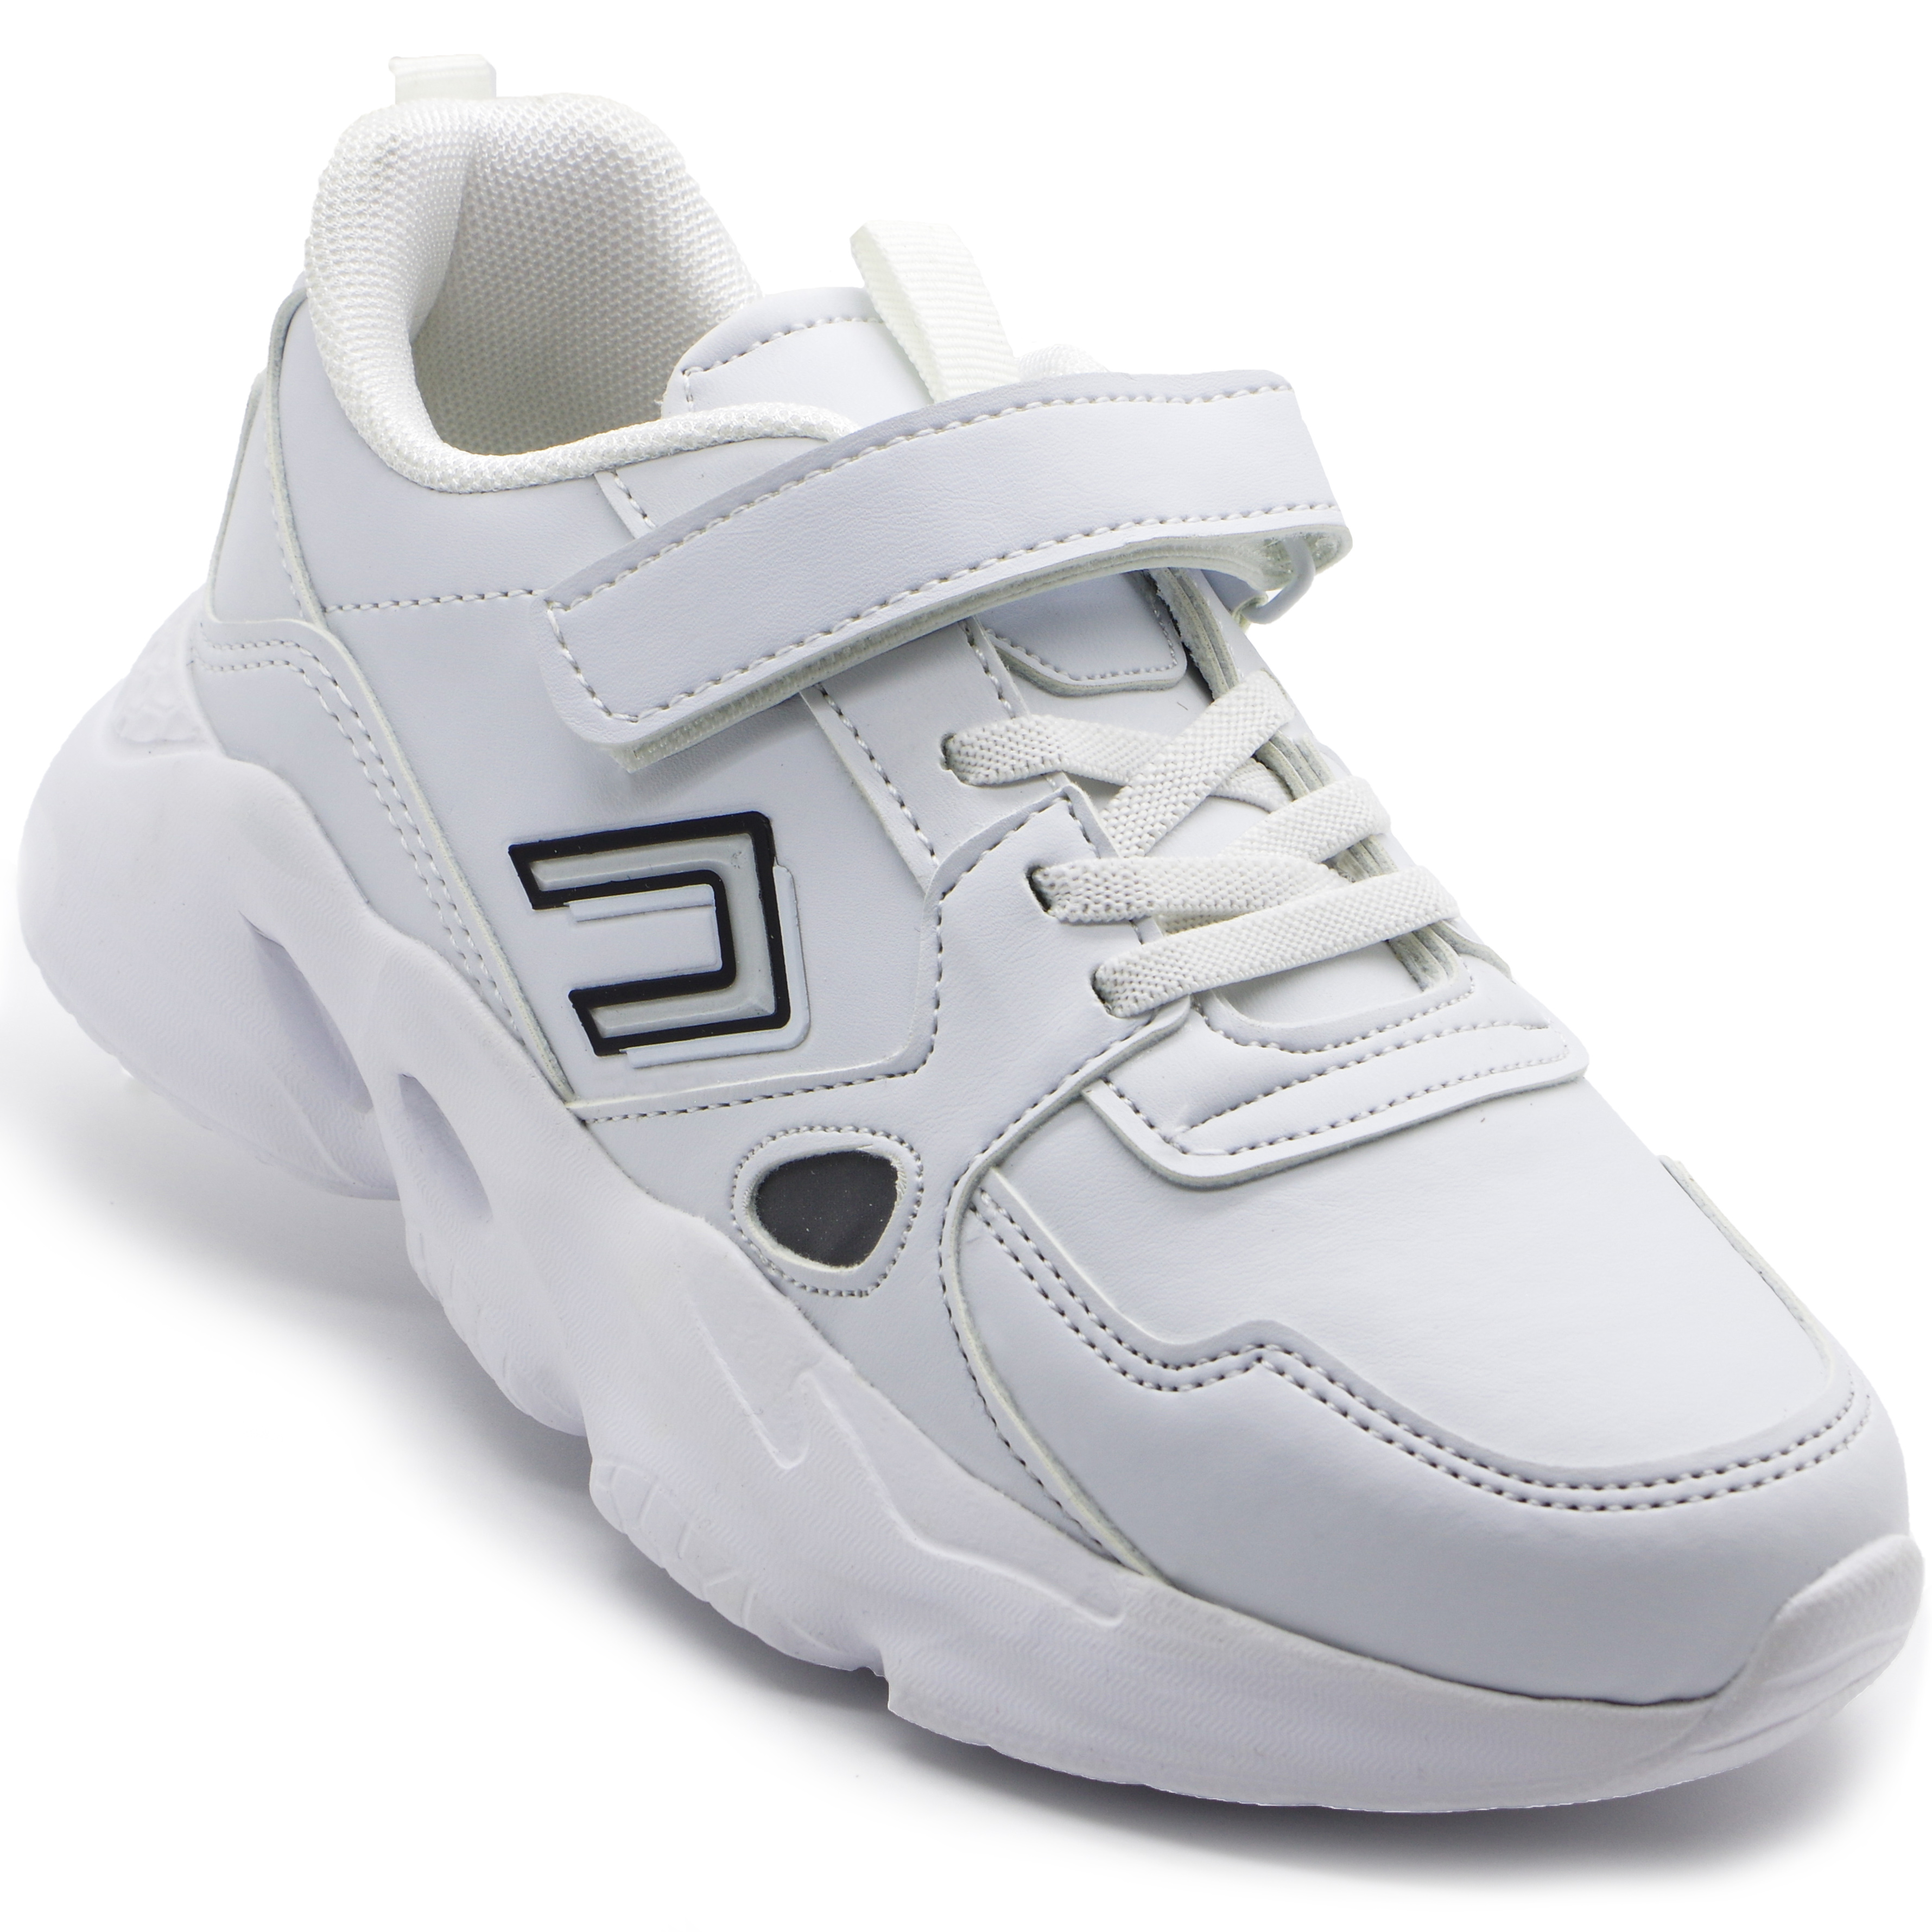 Кросівки для дівчат (2212) для дівчинки, матеріал Текстиль, Білий колір, 31-35 розміри – Sole Kids